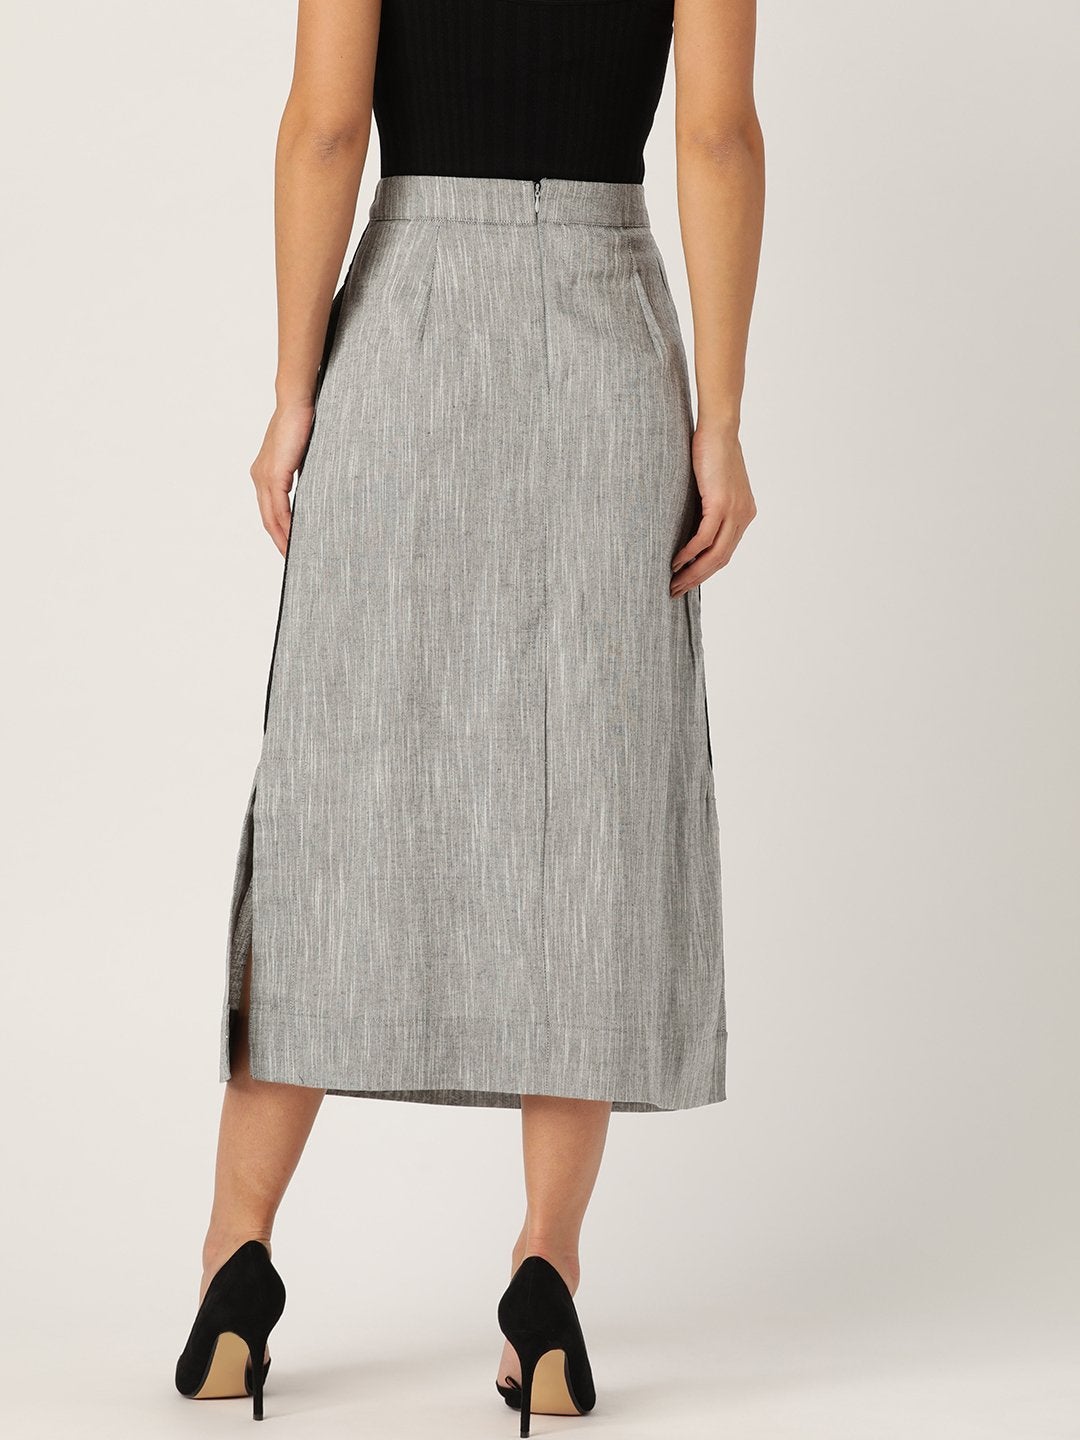 Women's Grey Skirt - InWeave